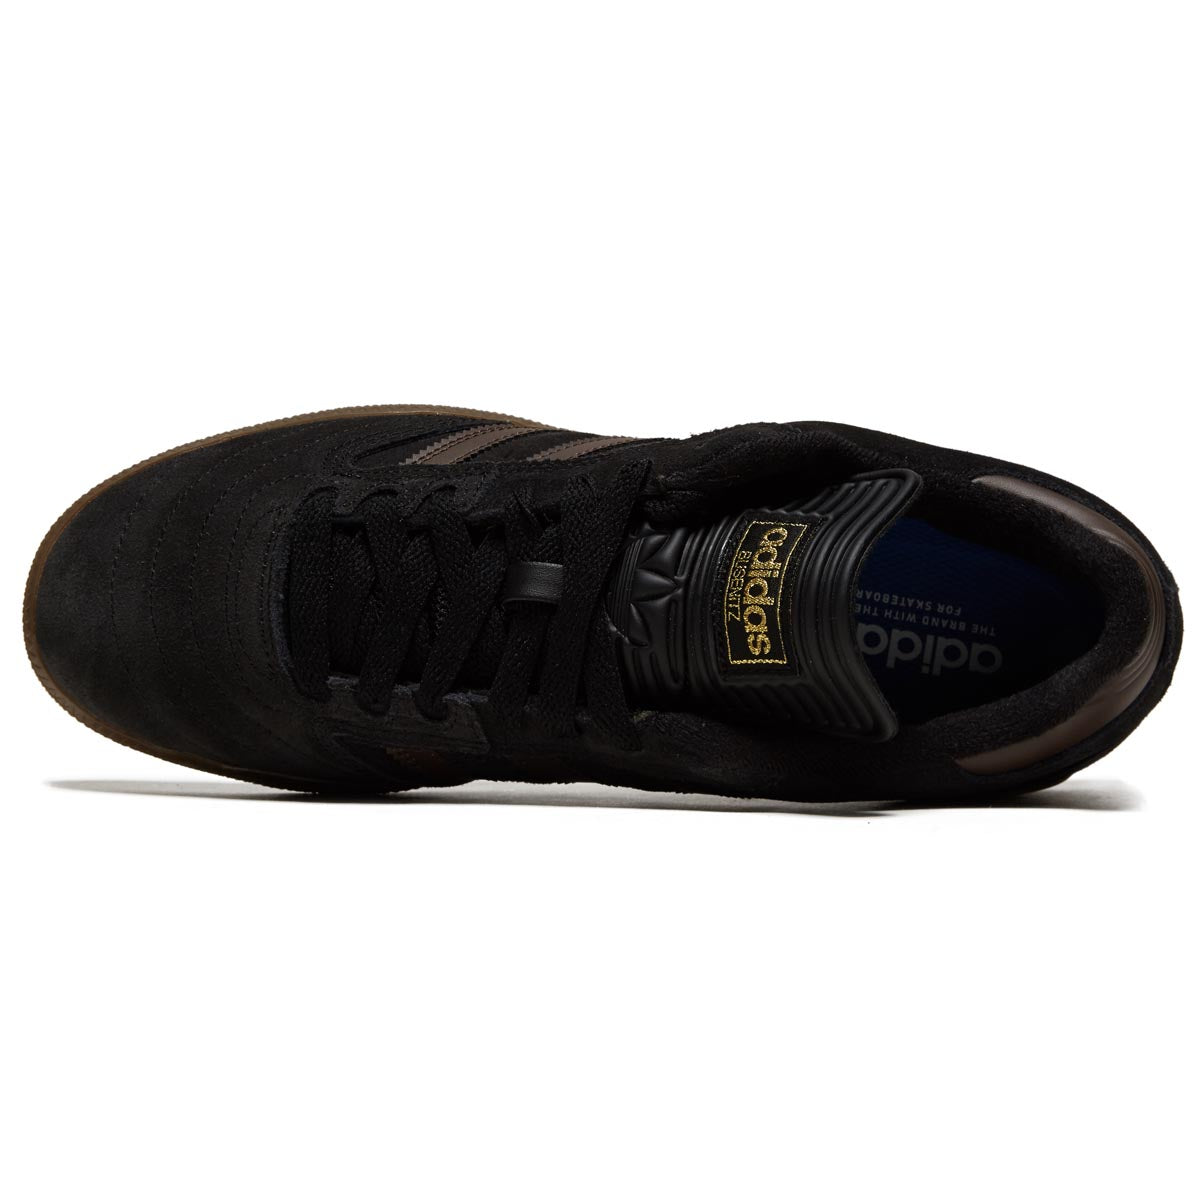 Adidas Busenitz Shoes - Black/Brown/Gold Metallic image 3